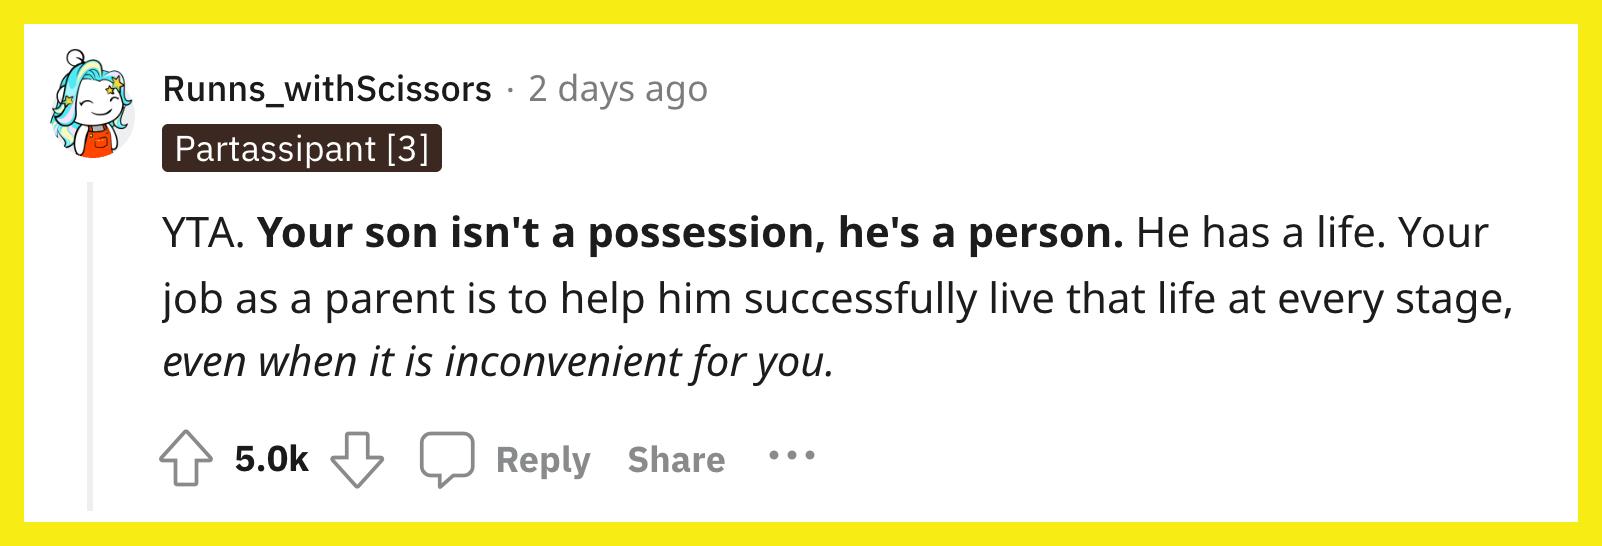 Reddit 用户 u/Runns_withScissors 评论道， "YTA。 你的儿子不是财产，他是一个人。 他有自己的生活。 作为父母，你的工作就是帮助他在每个阶段成功地过上那种生活，即使这对你来说不方便。"